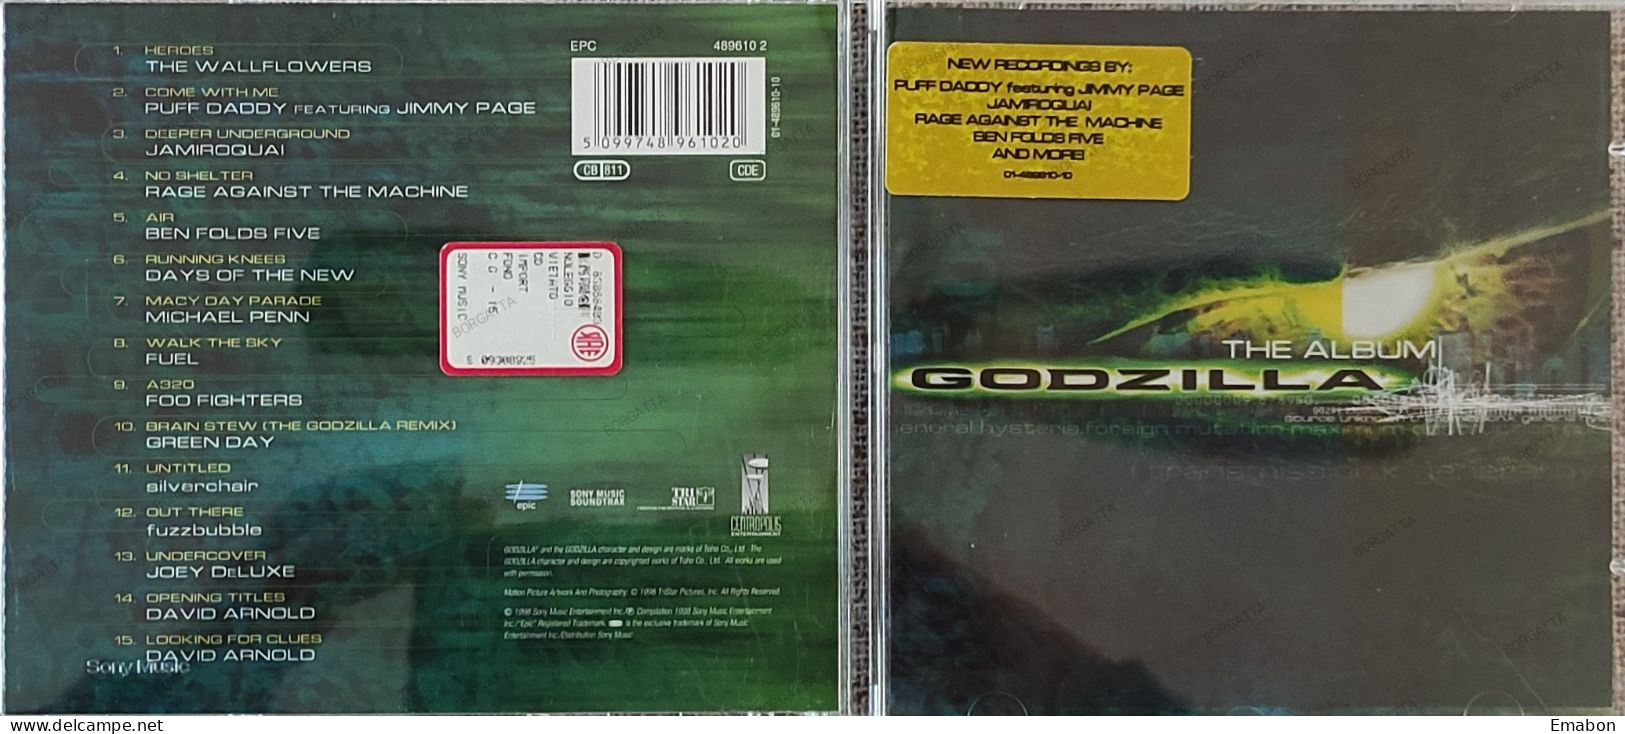 BORGATTA - FILM MUSIC  - Cd   THE ALBUM GODZILLA - EPIC/SONY 1998- USATO In Buono Stato - Soundtracks, Film Music